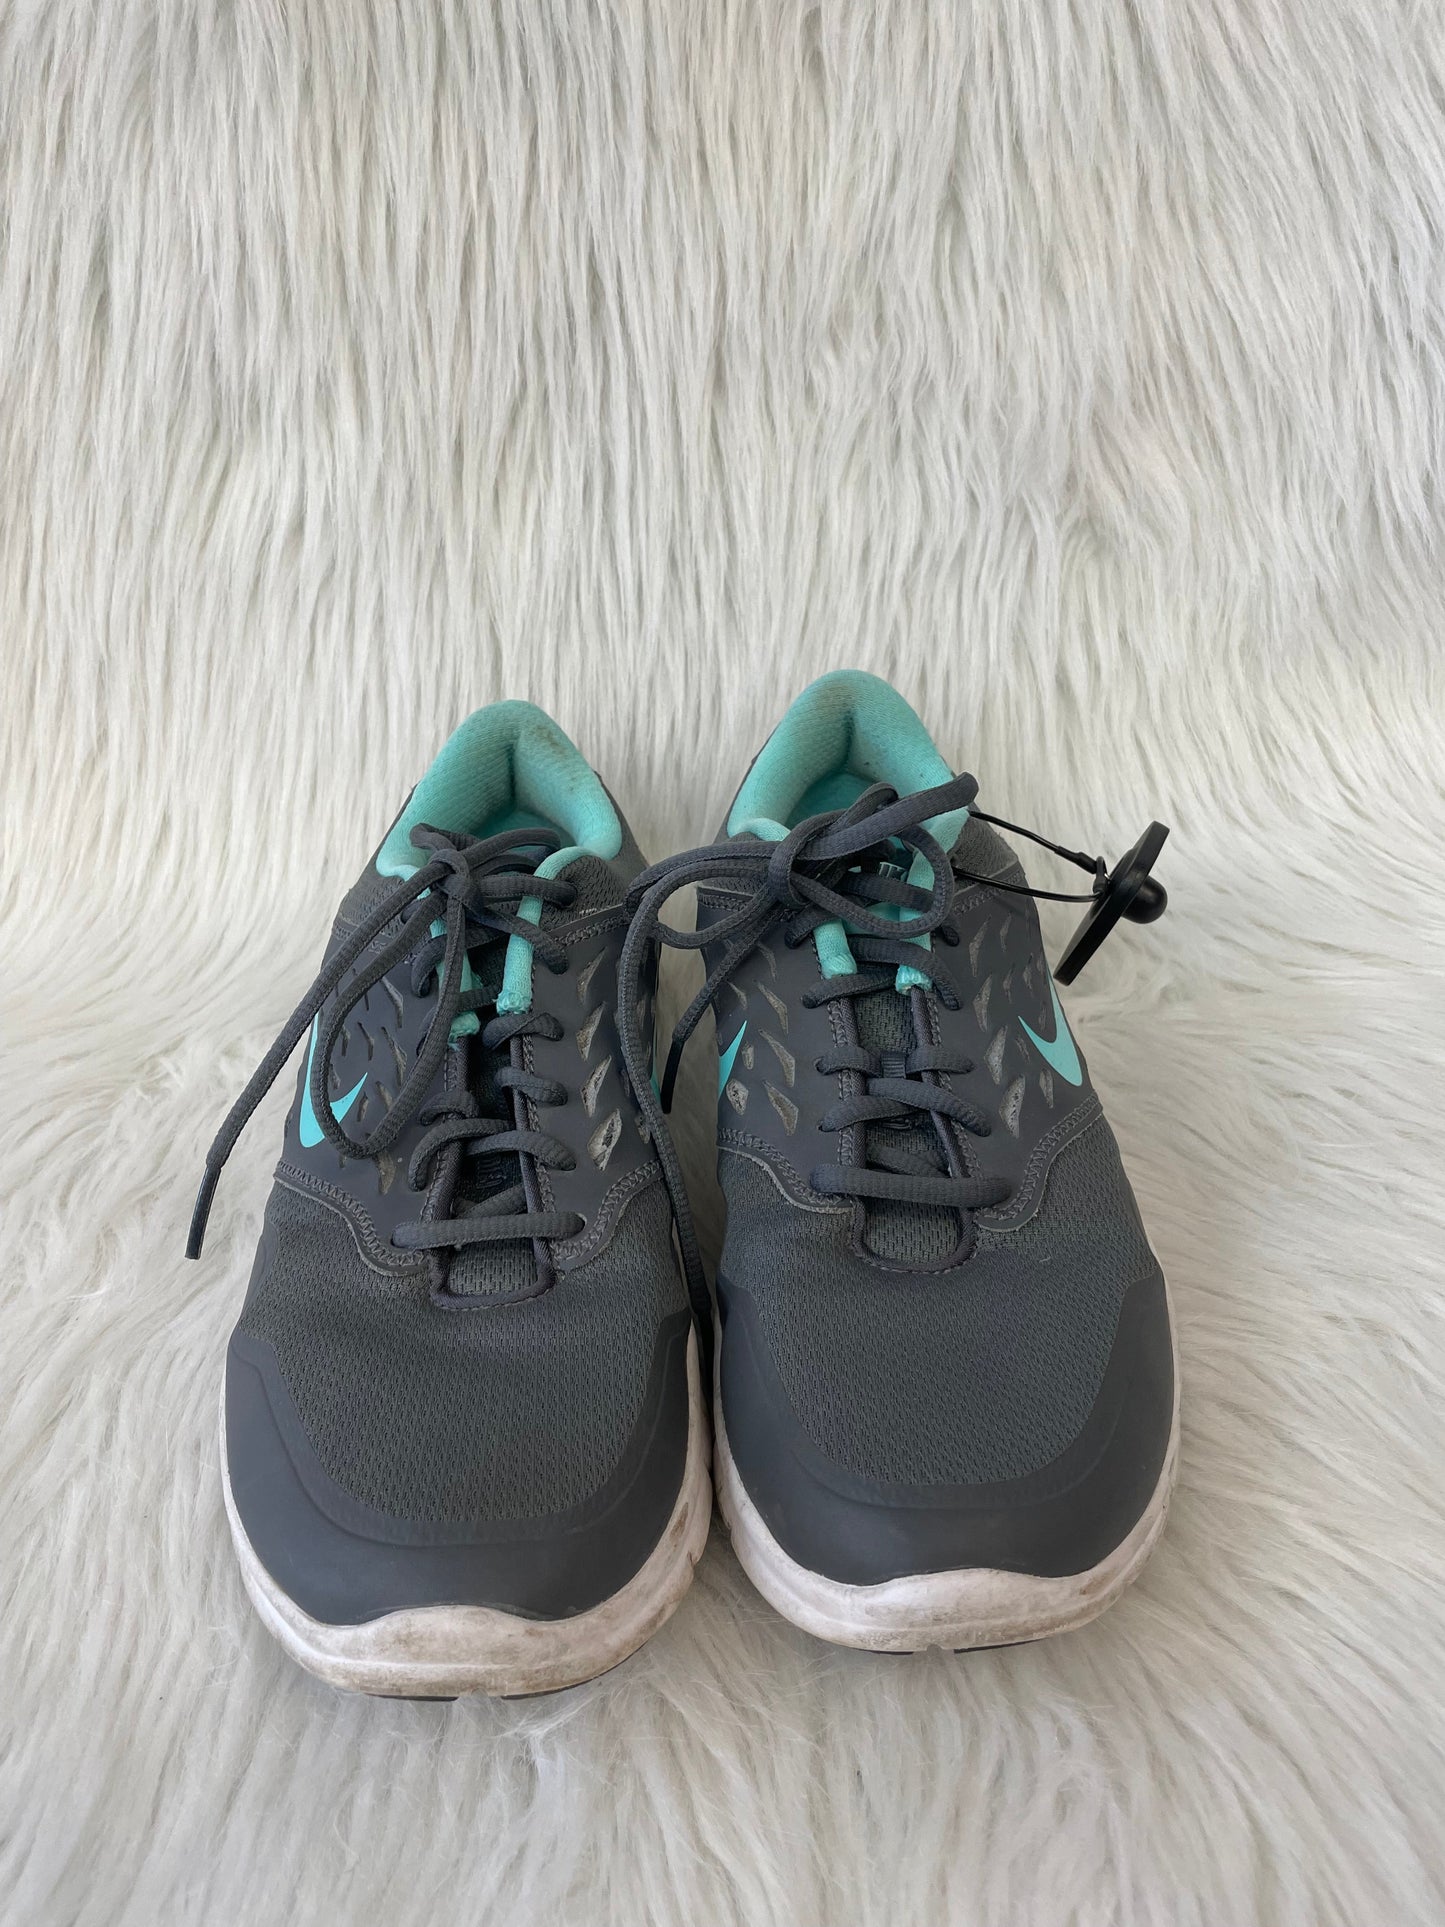 Blue & Grey Shoes Athletic Nike, Size 9.5